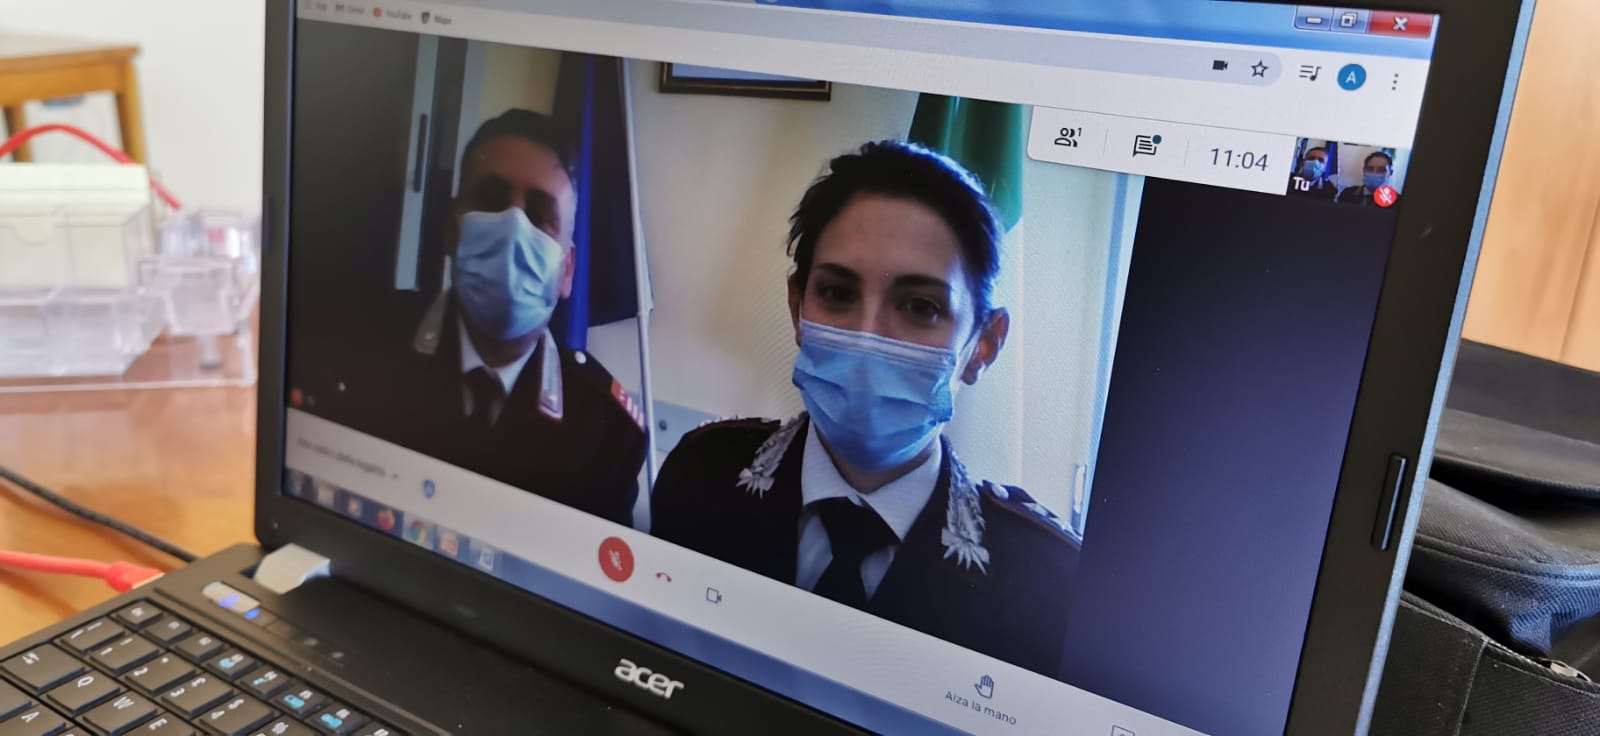 Ogliastro Cilento, la legalità s’impara dal web: videocall tra carabinieri e studenti